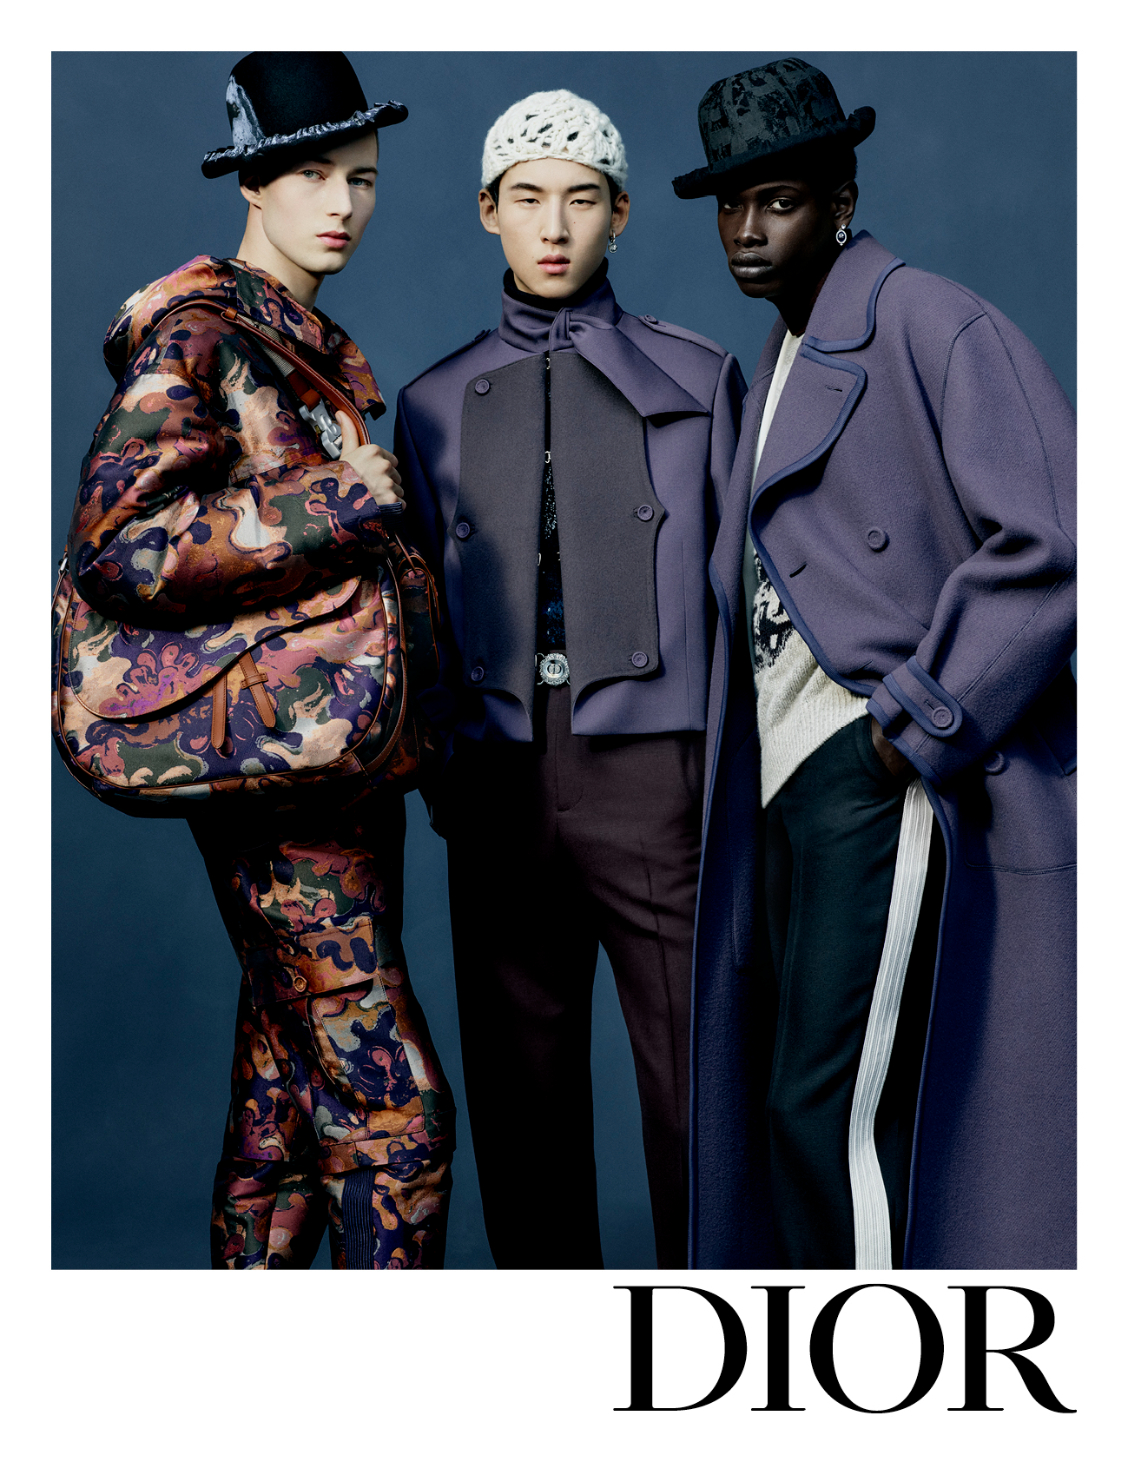 Dior Men đã tạo ra một xu hướng mới trong thế giới thời trang, đem đến cho nam giới những bộ trang phục ấn tượng và đầy phong cách. Thiết kế độc đáo, kết hợp tinh tế với họa tiết độc đáo chắc chắn sẽ thu hút sự chú ý của bạn. Hãy xem hình ảnh để khám phá thêm về thế giới thời trang nam Dior Men.